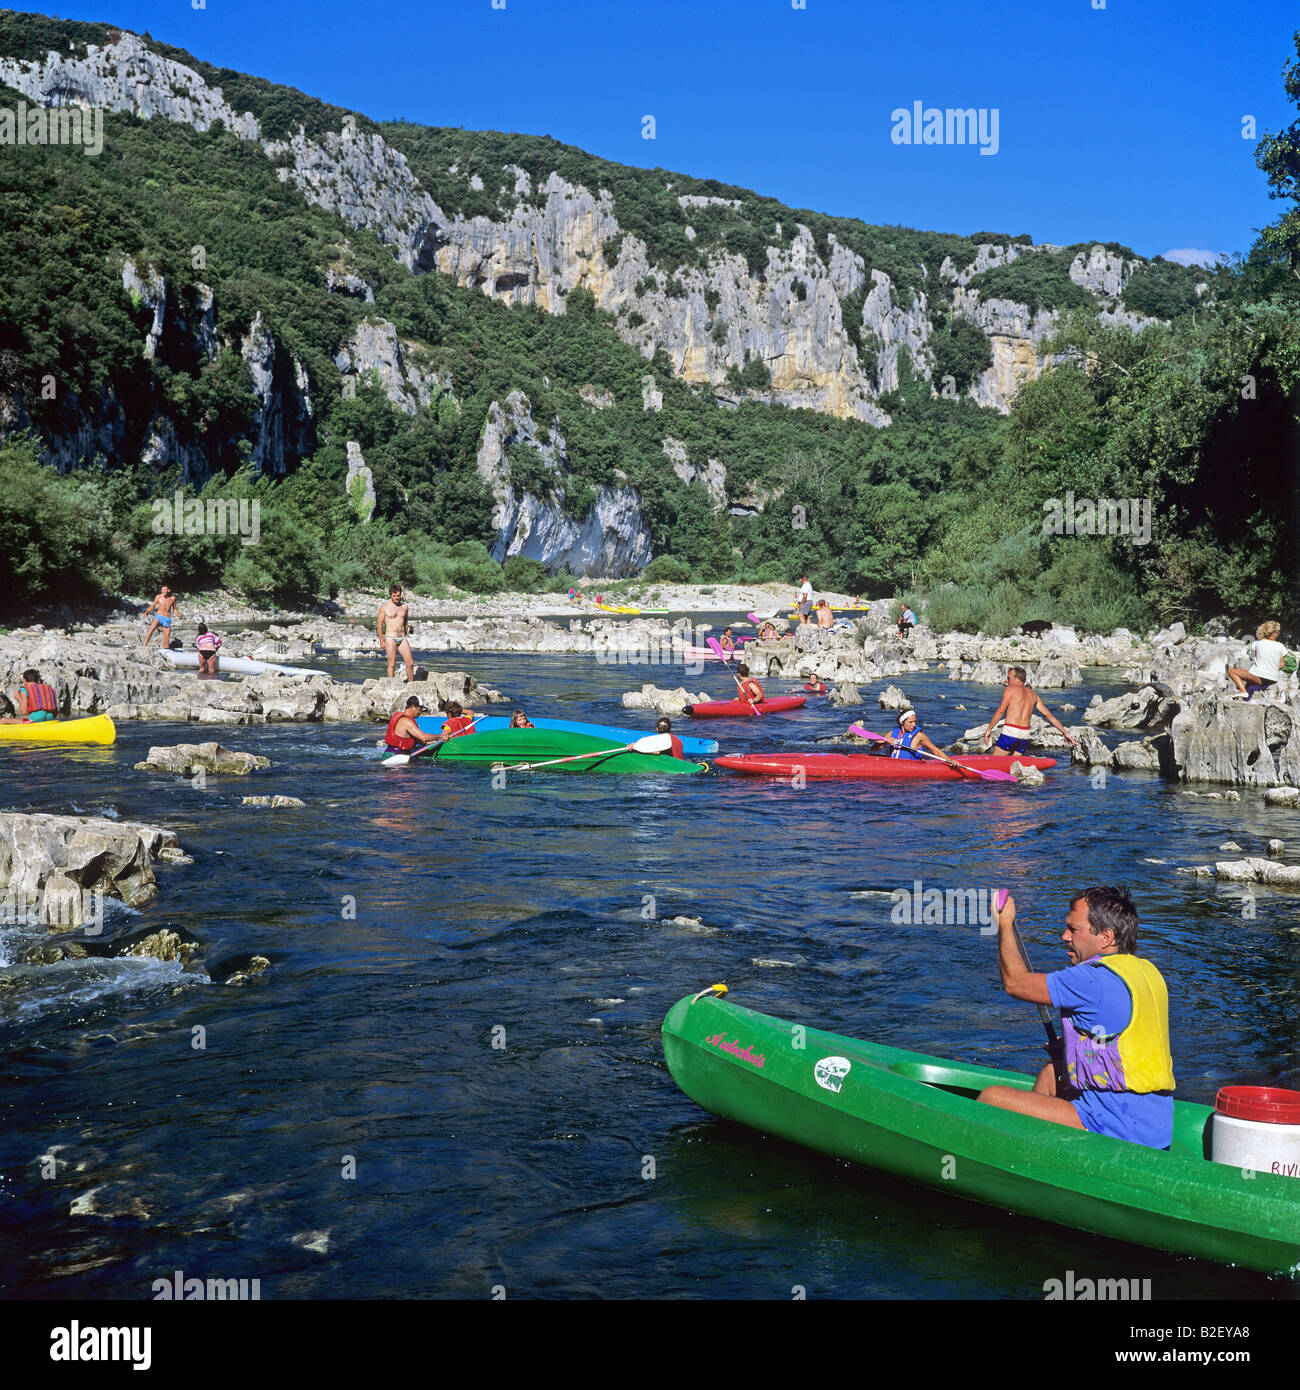 Kanufahren auf dem Fluss Ardèche Gorges de l'Ardèche Frankreich  Stockfotografie - Alamy